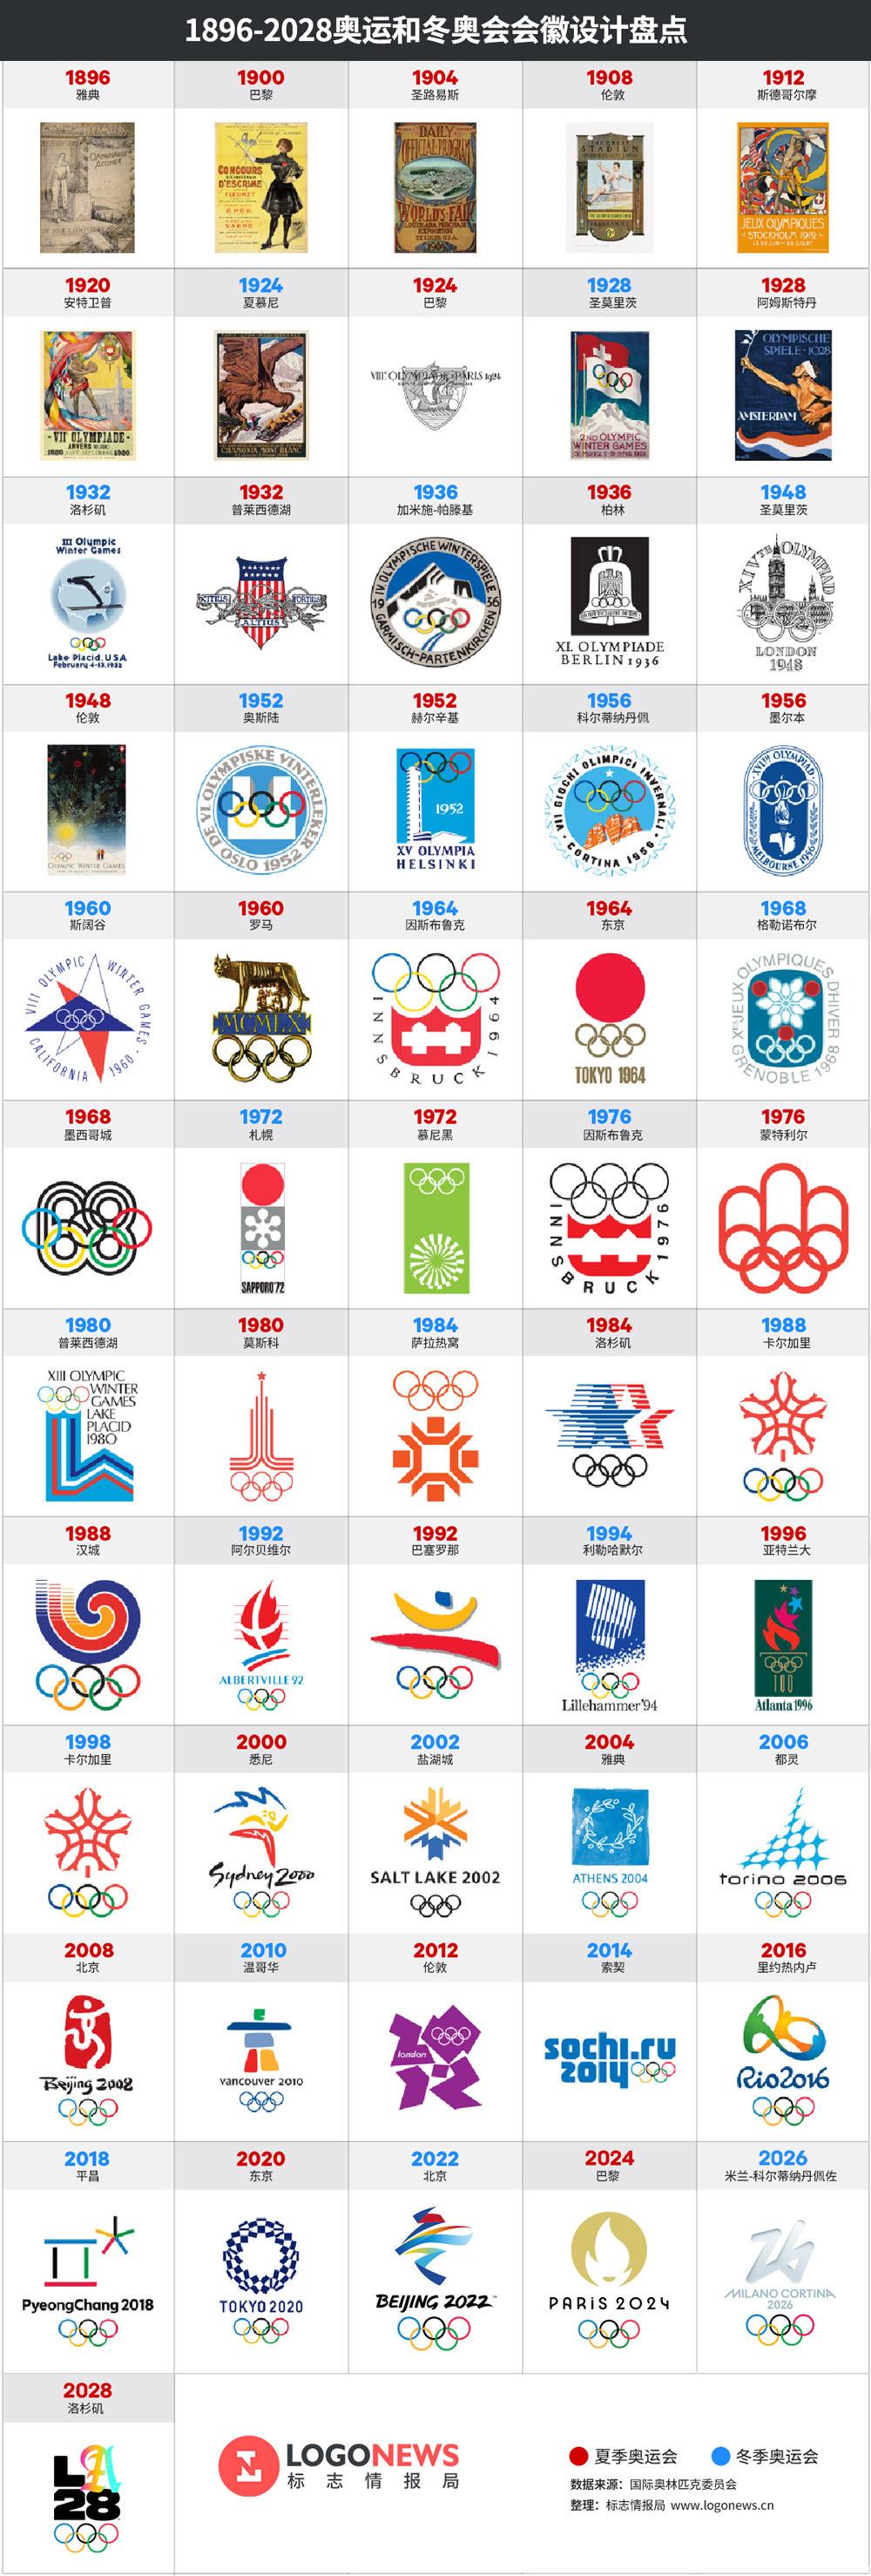 2026年冬奥会会徽，2026年冬奥会会徽设计